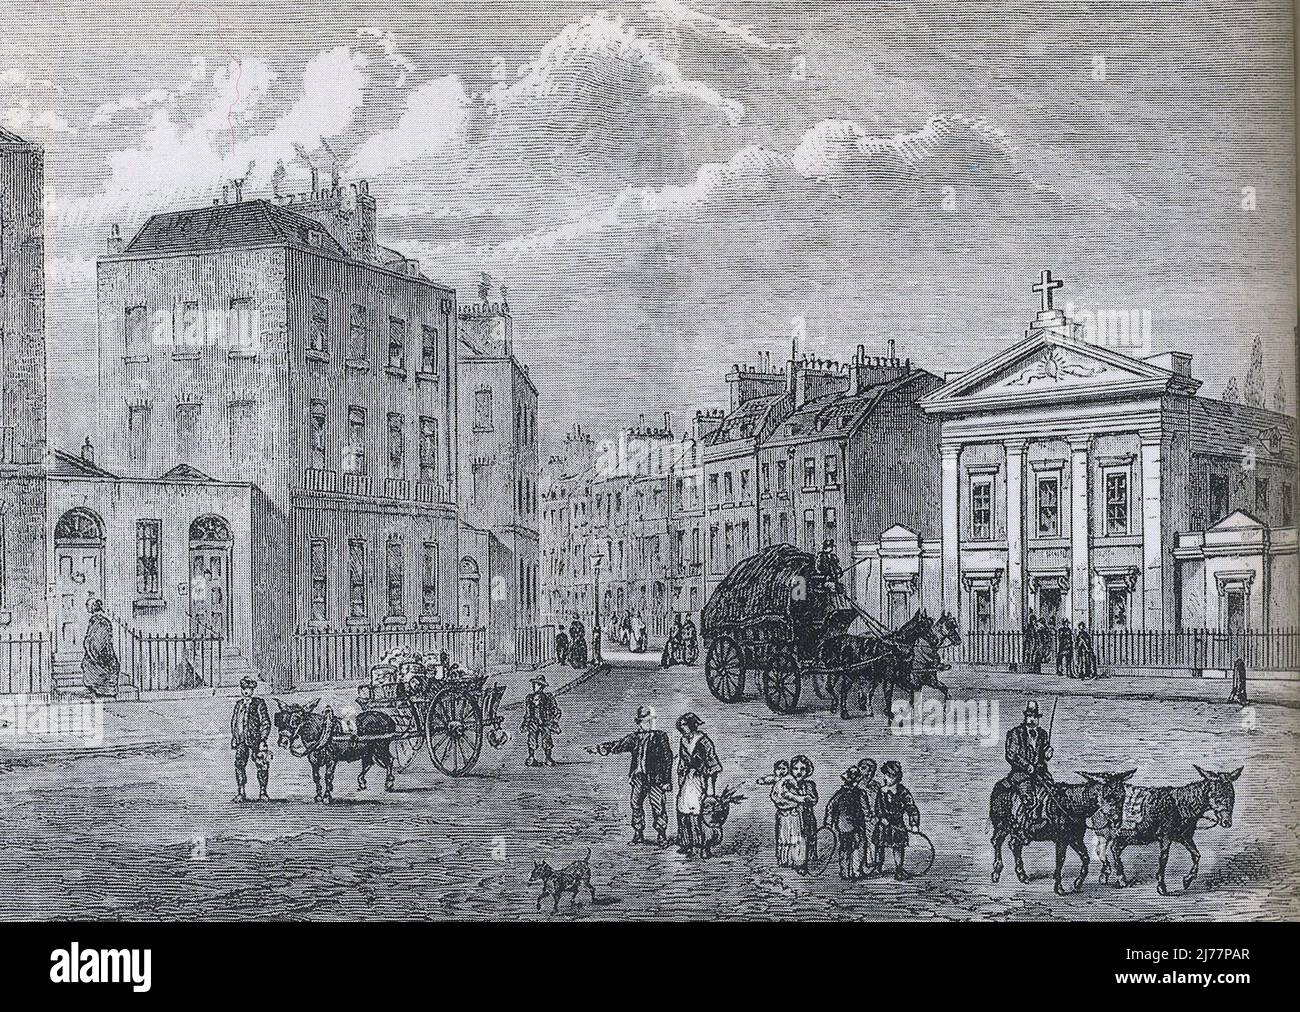 Das Polygon (links) in Somers Town, London, zwischen Camden Town und St. Pancras, wo Mary Godwin (später Mary Shelley - Autorin von Frankenstein) geboren wurde und ihre frühesten Jahre verbrachte Stockfoto